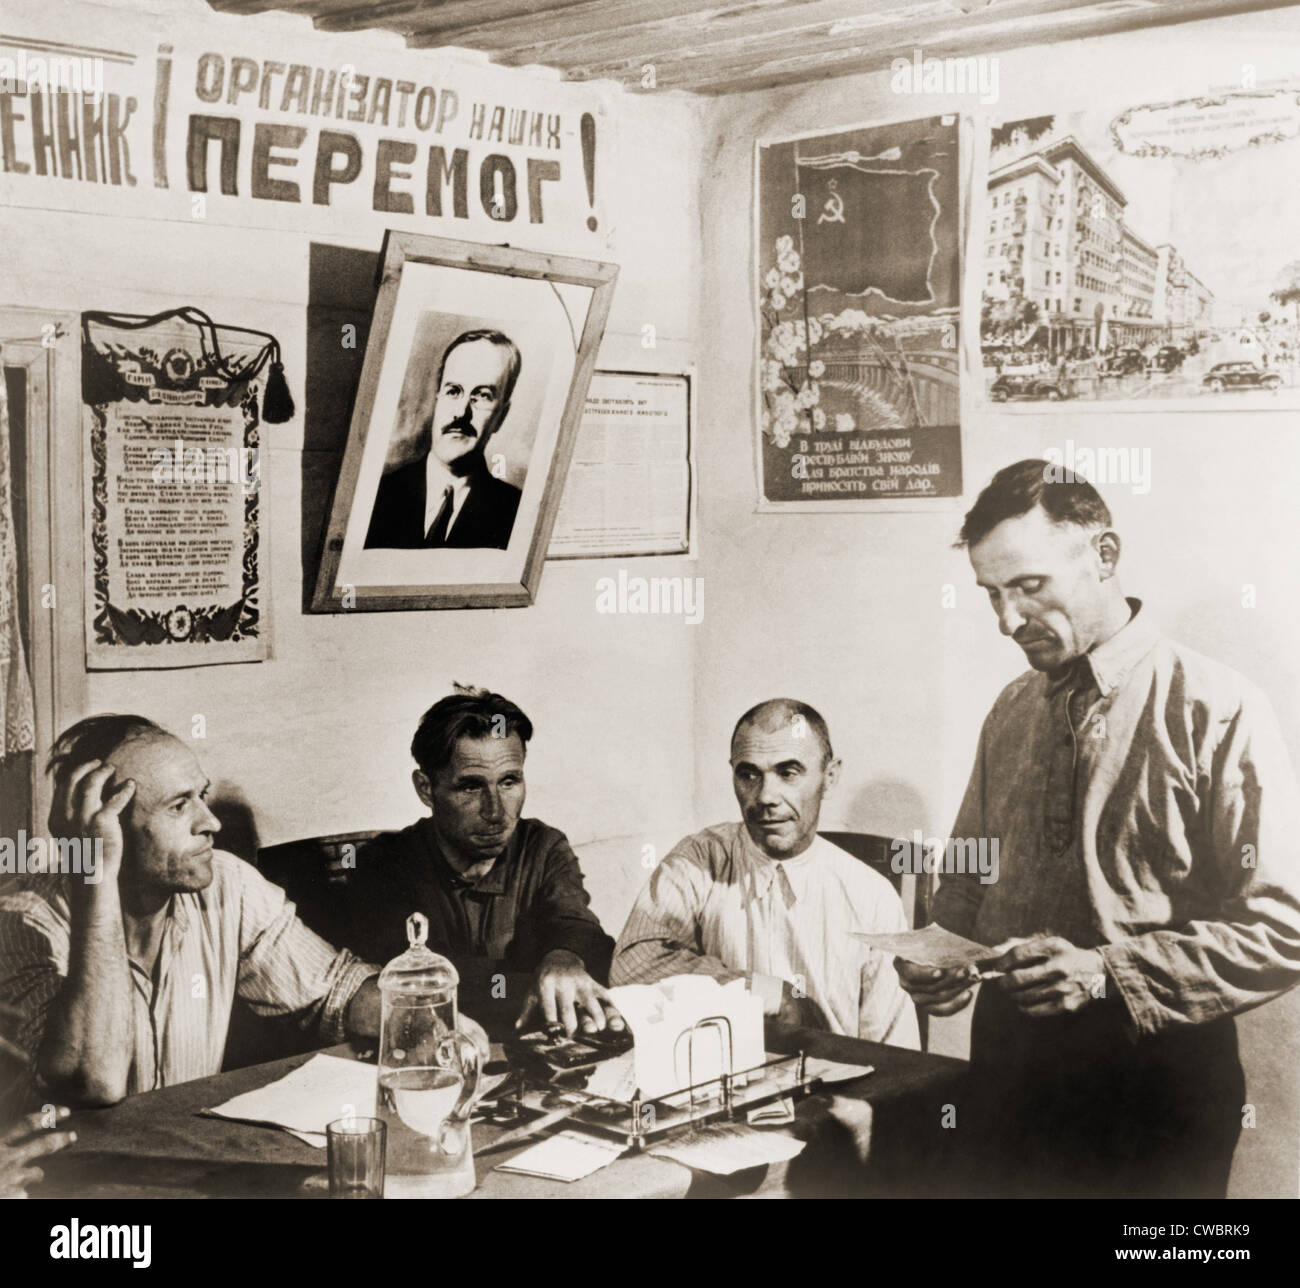 En una granja de la colección de la era soviética en Rusia, los miembros de la comisión de gobierno se reúnen para debatir sobre la producción y la gestión de las explotaciones. Foto de stock